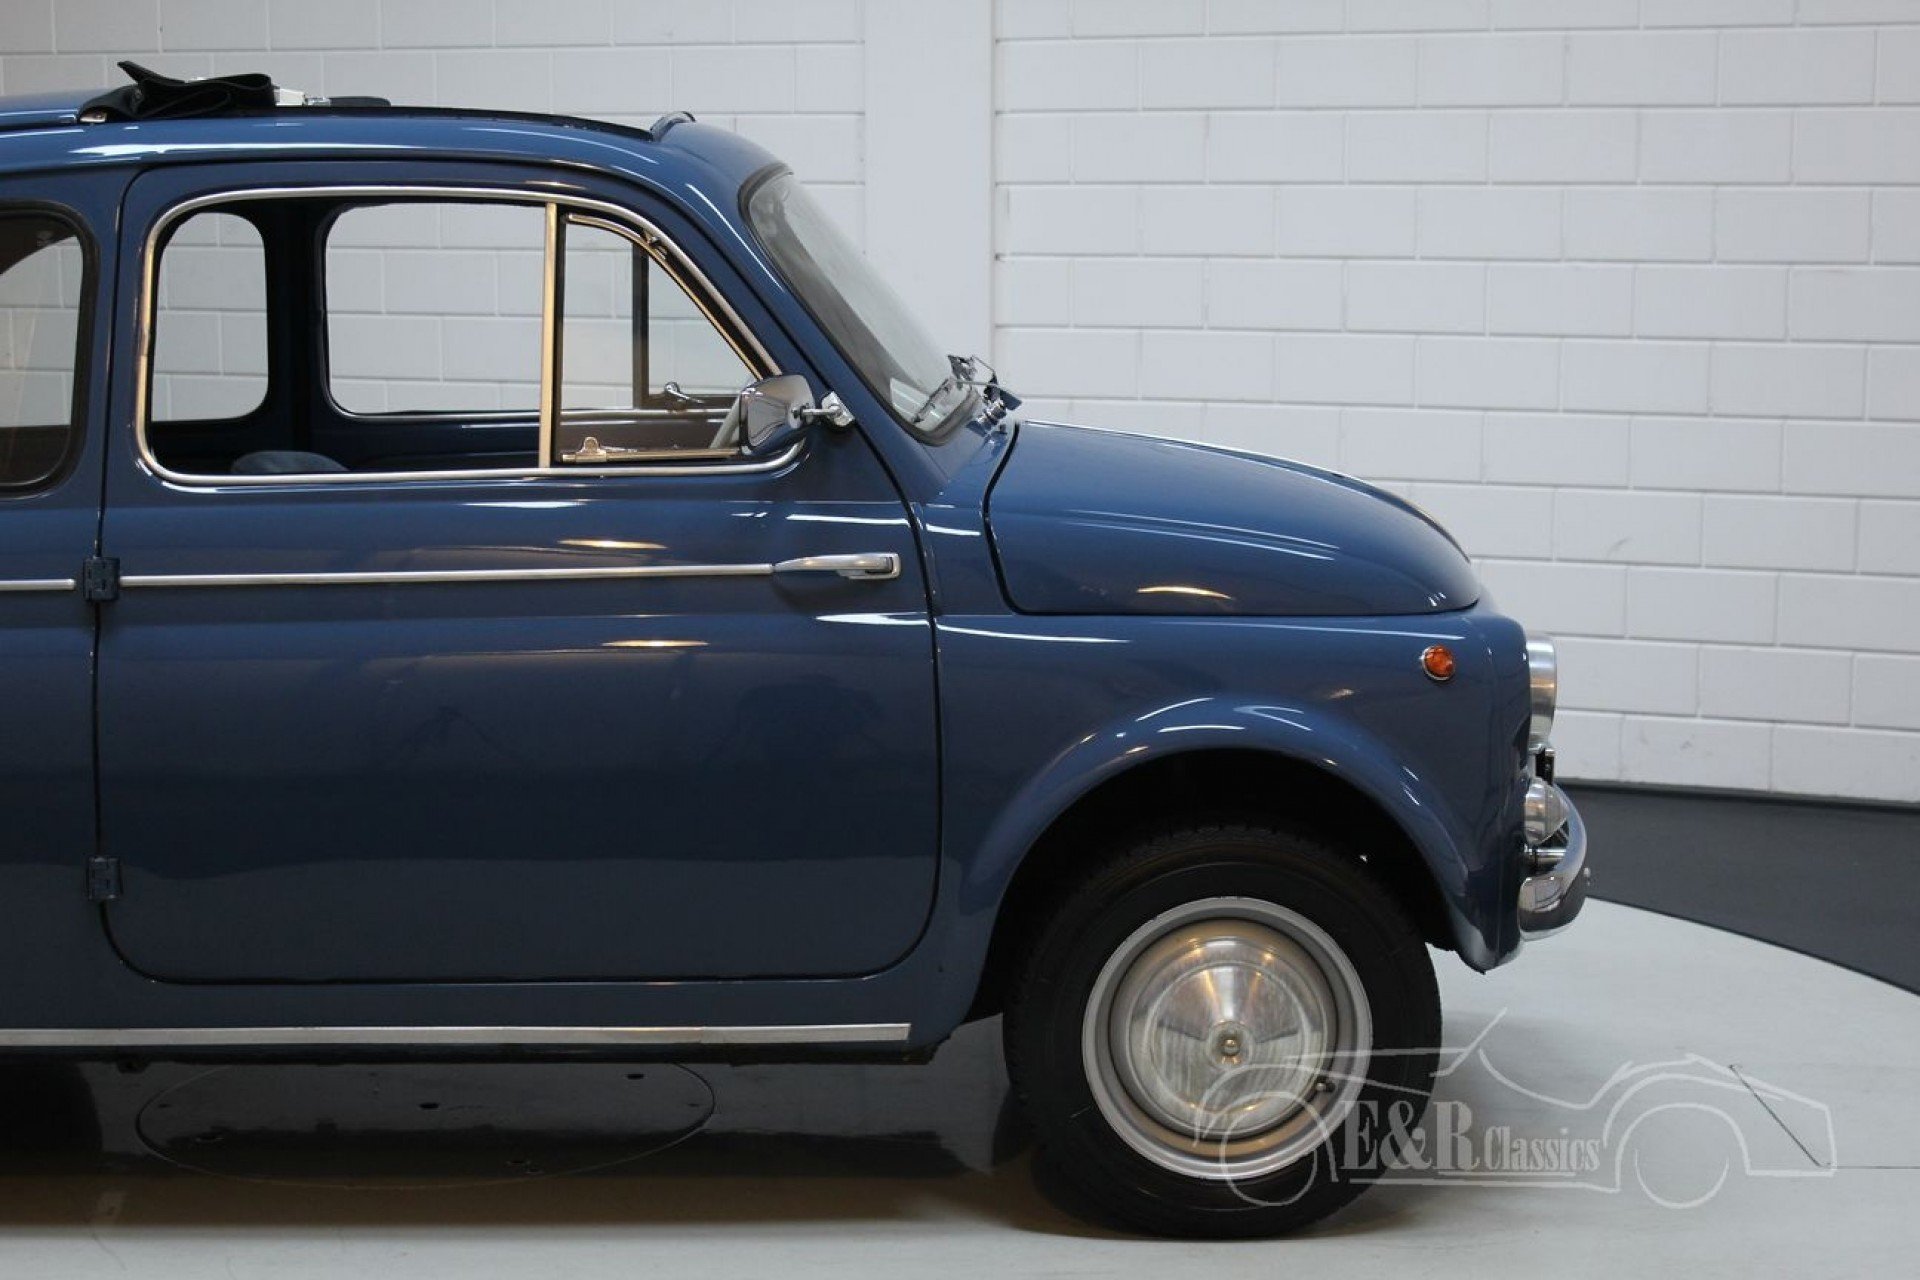 Porte-clés pvc Fiat 500 bleu - La Boutique du Collectionneur